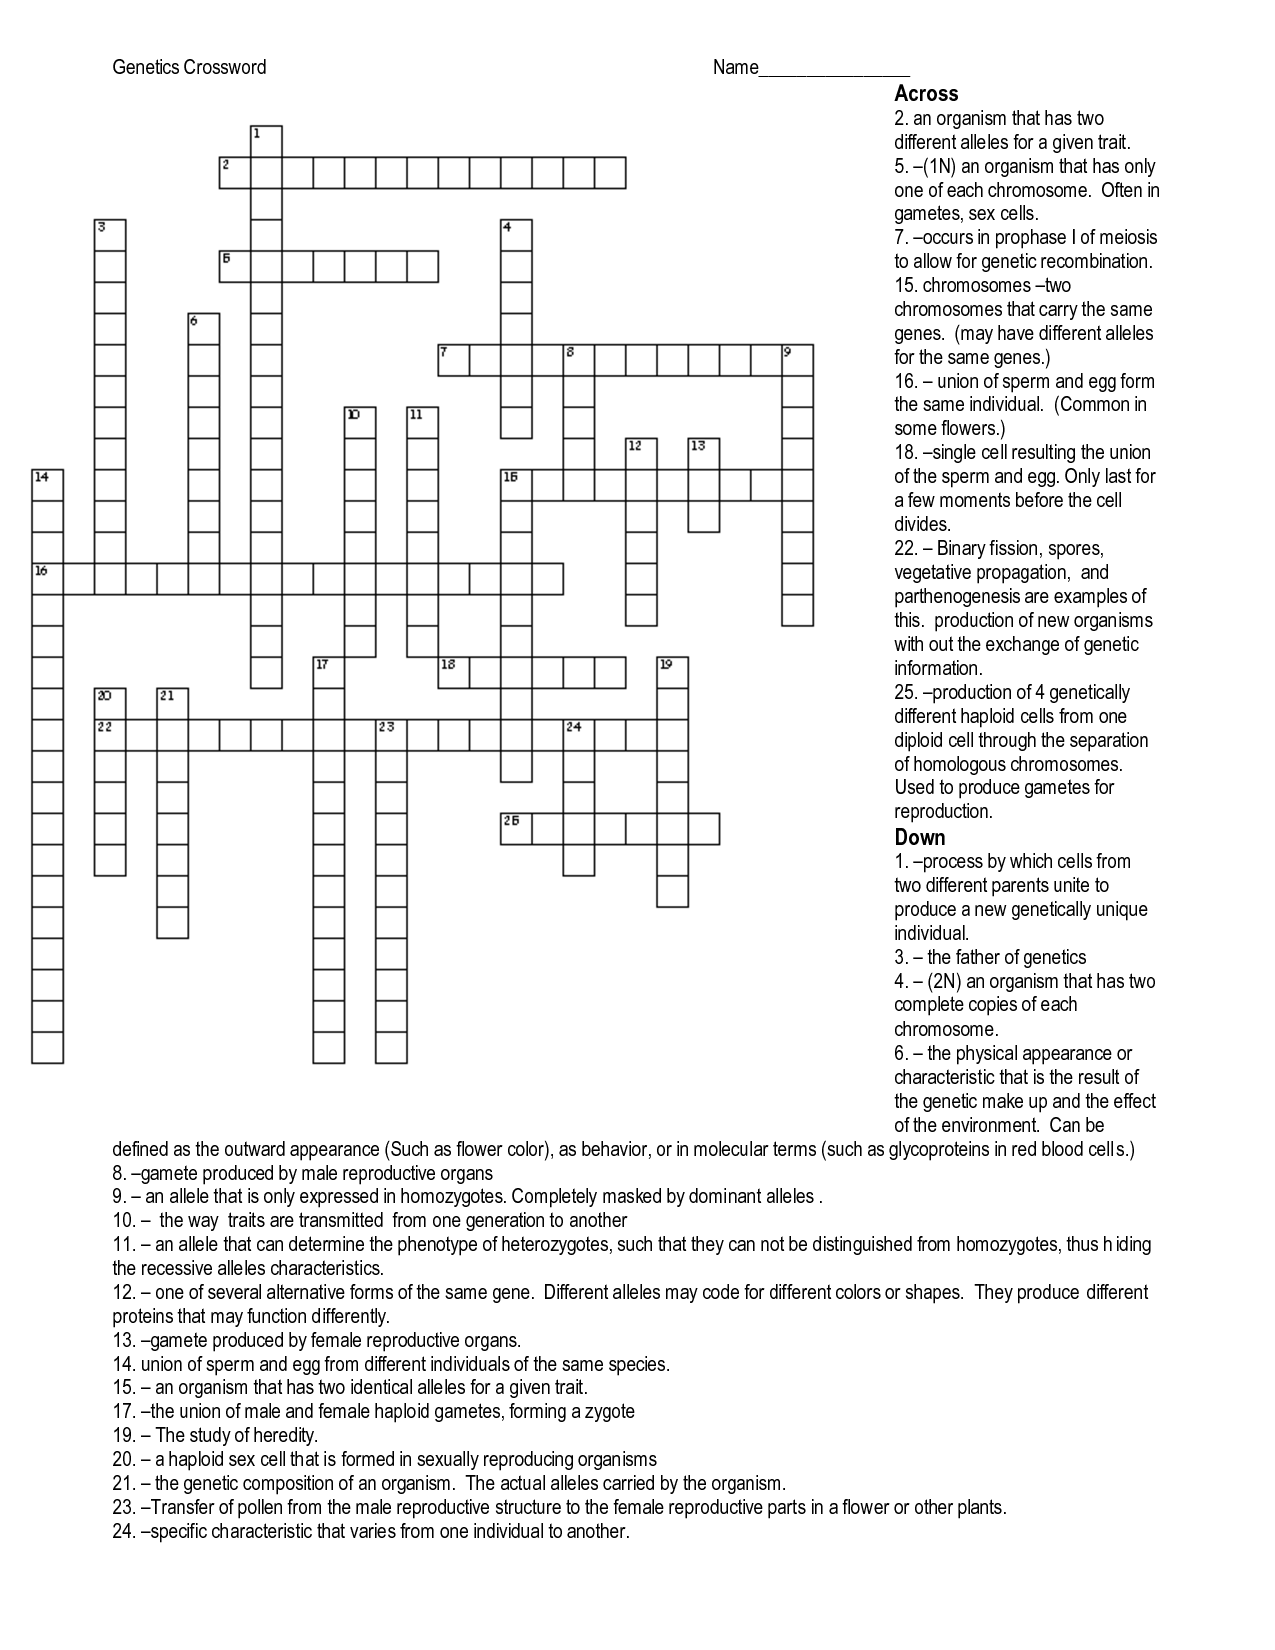 Genetics Crossword Puzzle Answers Image